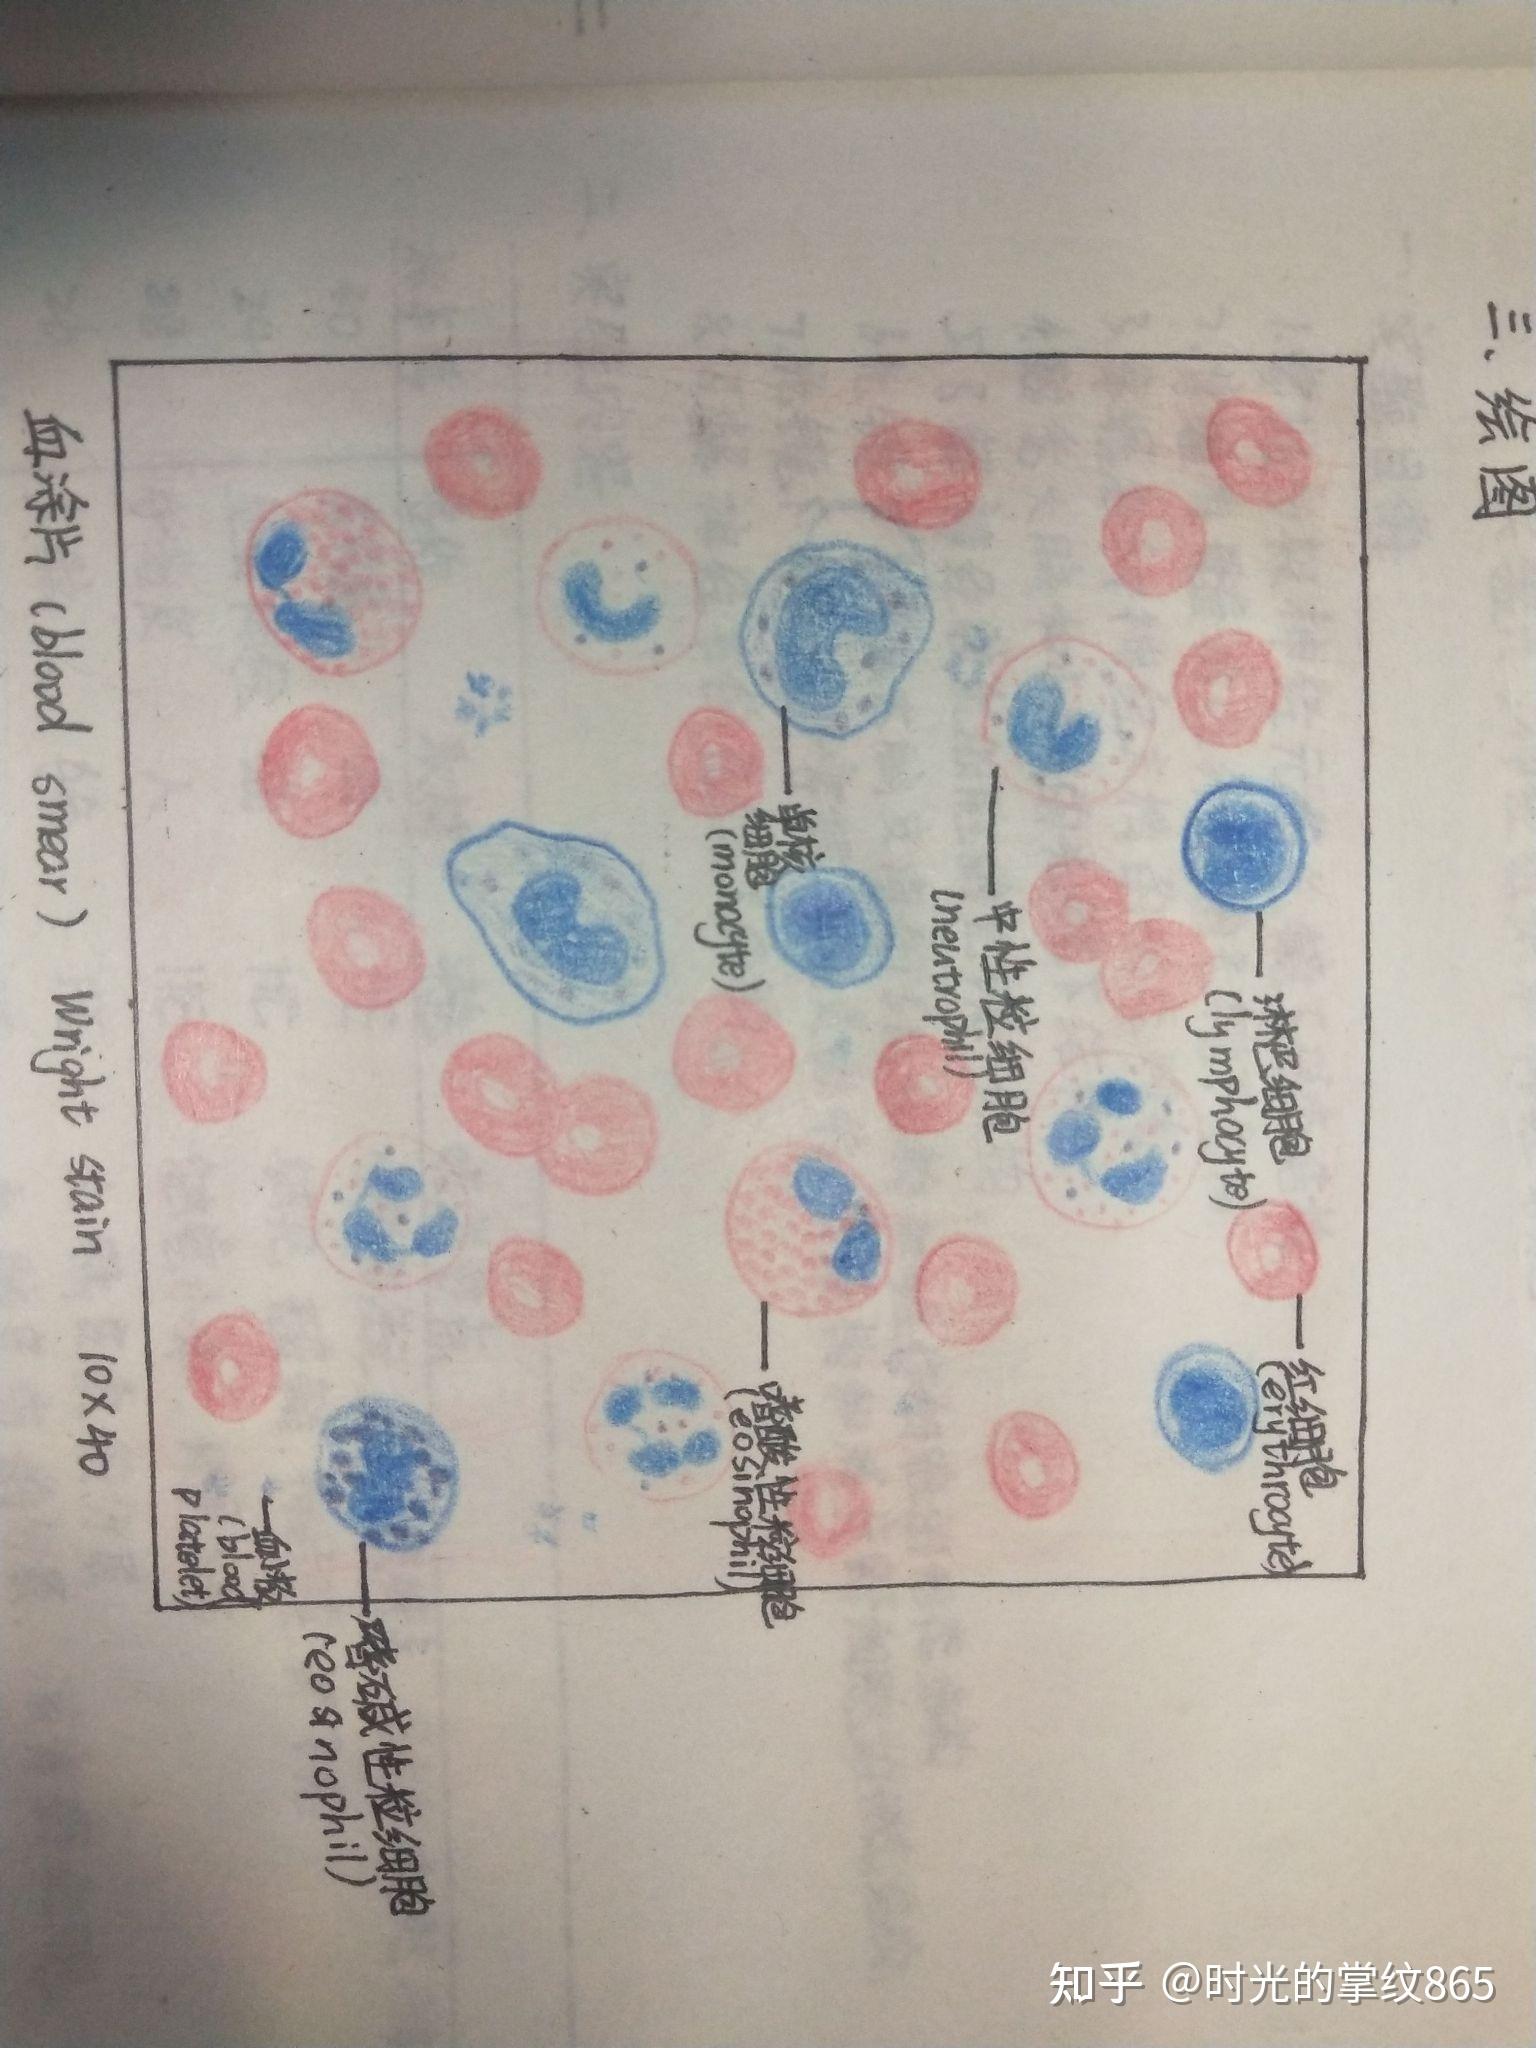 蛙红细胞绘图图片